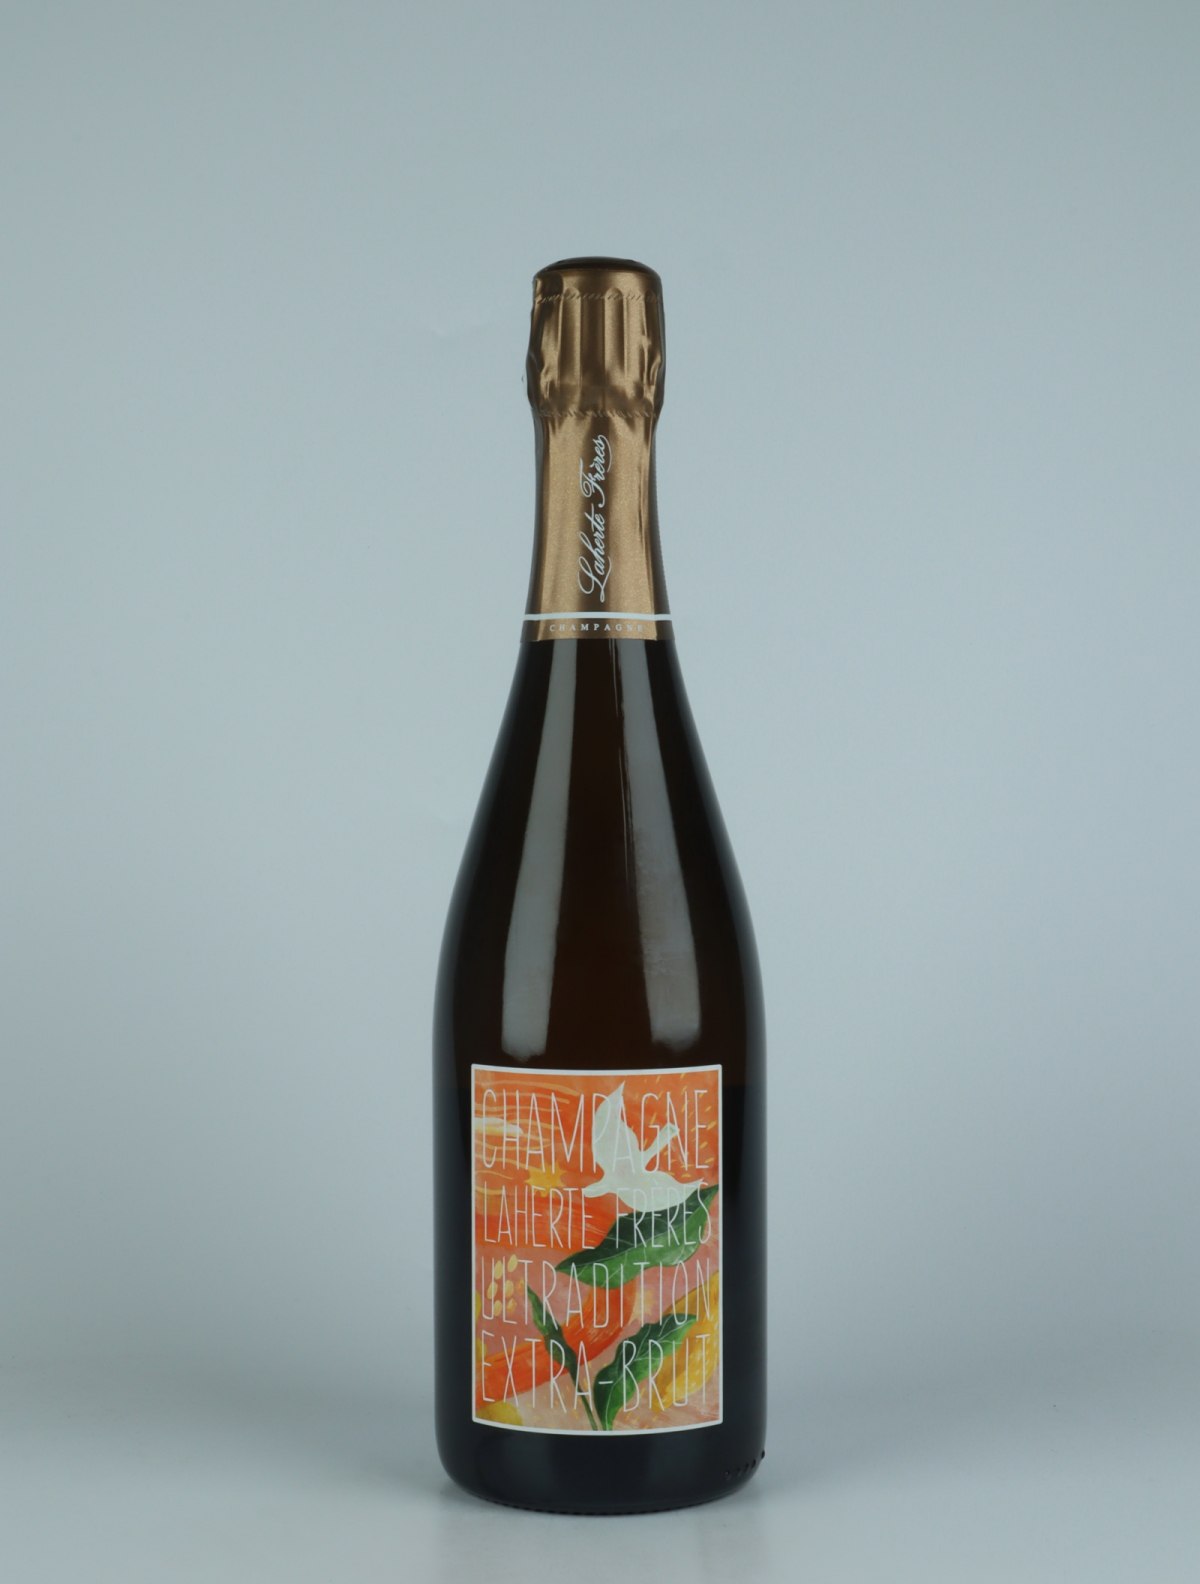 A bottle N.V. Ultradition - Extra Brut Sparkling from Laherte Frères, Champagne in France